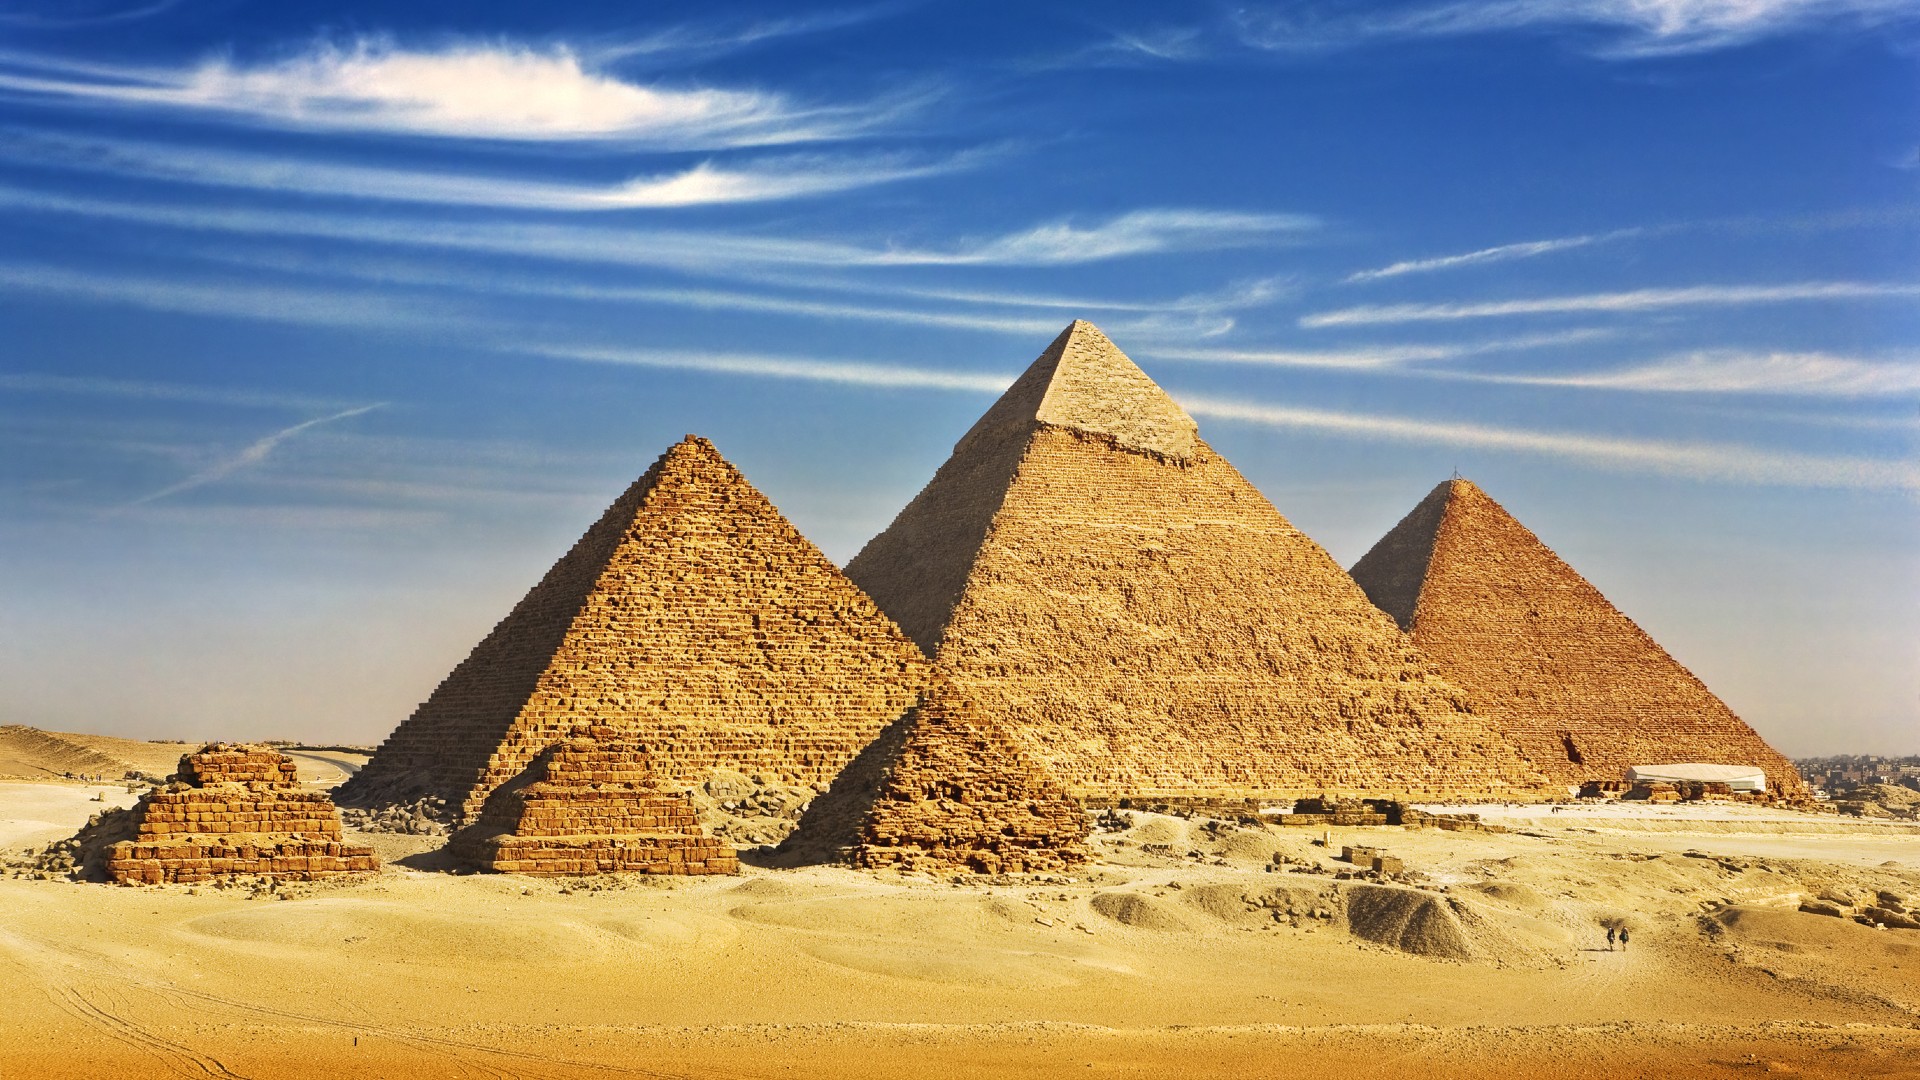 Why are misr pyramids so unique?